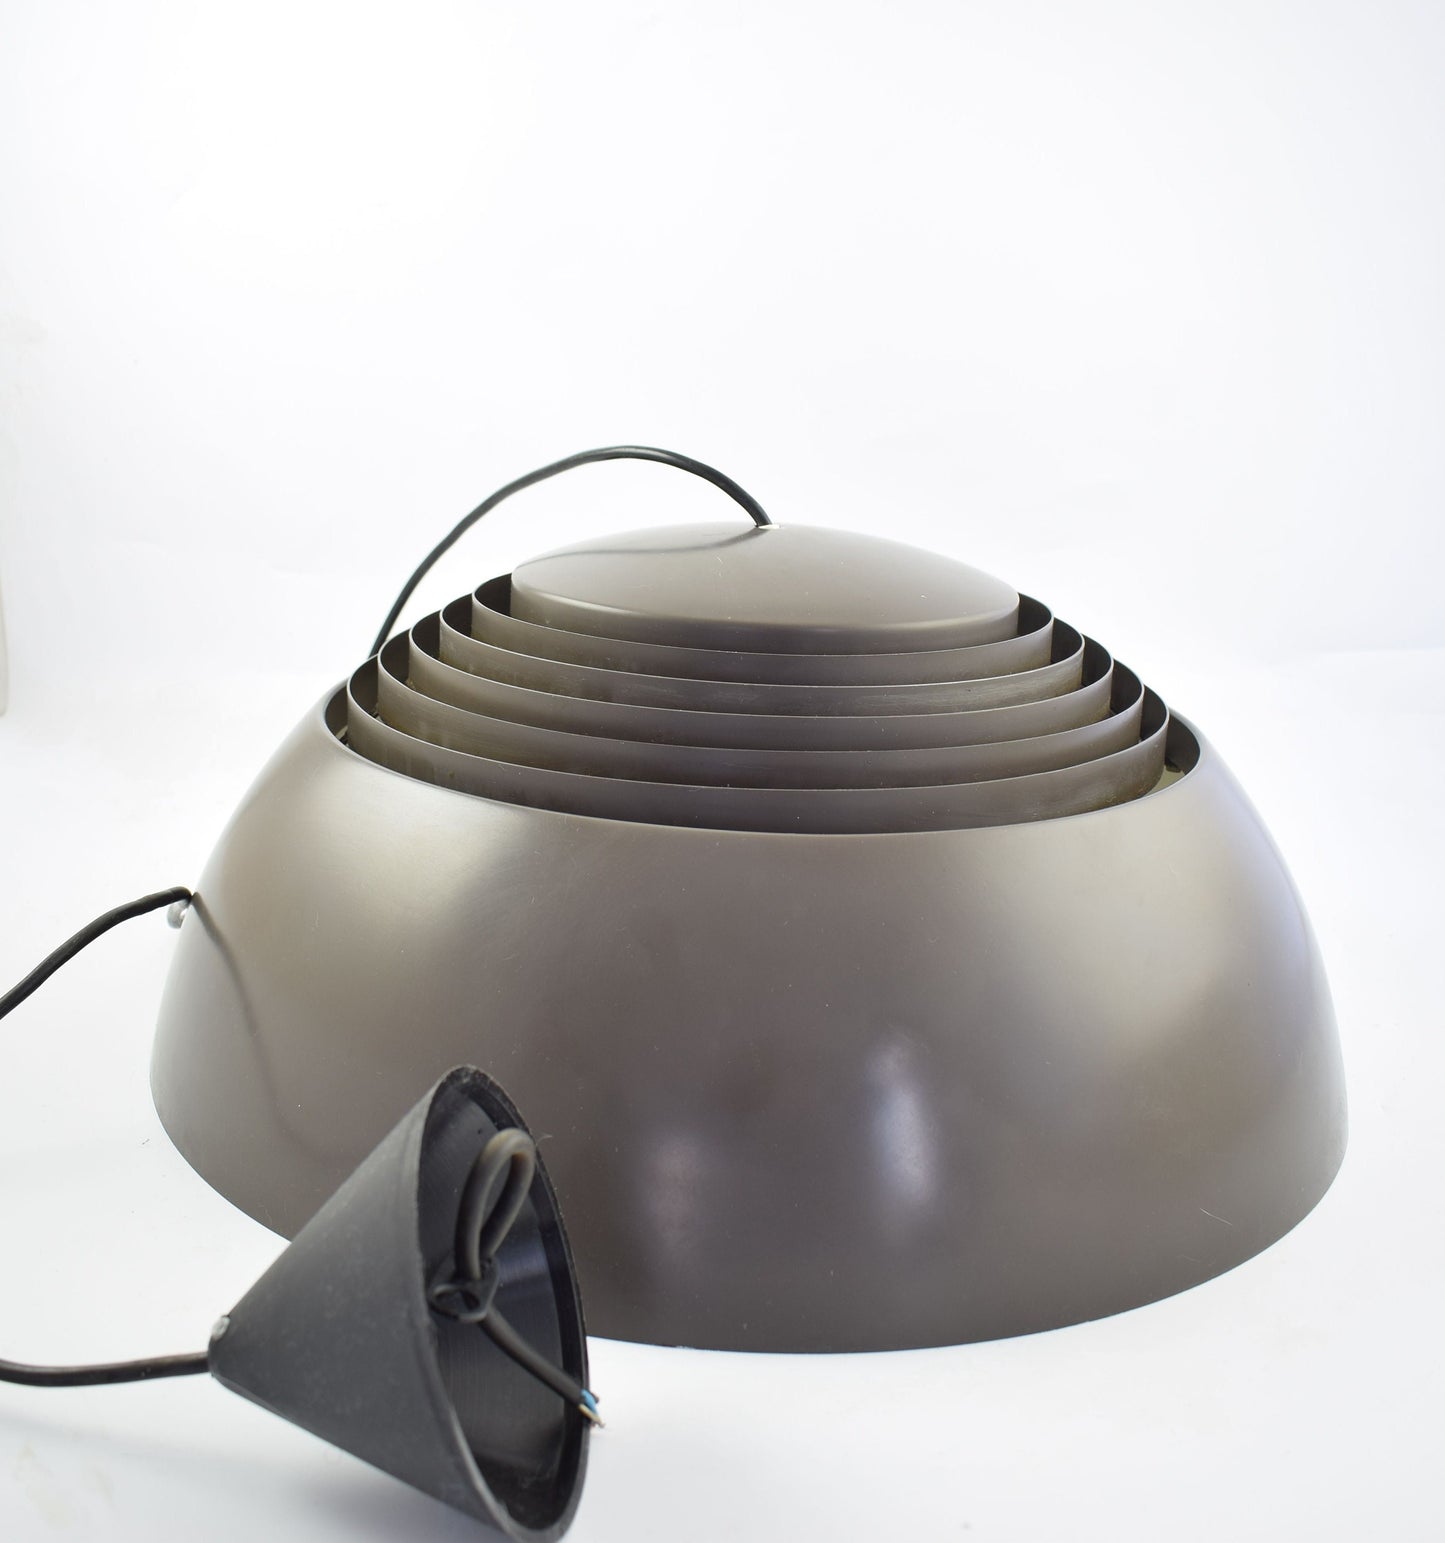 Arne Jacobsen AJ Royal plafondlamp, voor de Scandinavische fabrikant Louis Poulsen, bekend als AJ Royal Pendel donkerbruin/antraciet